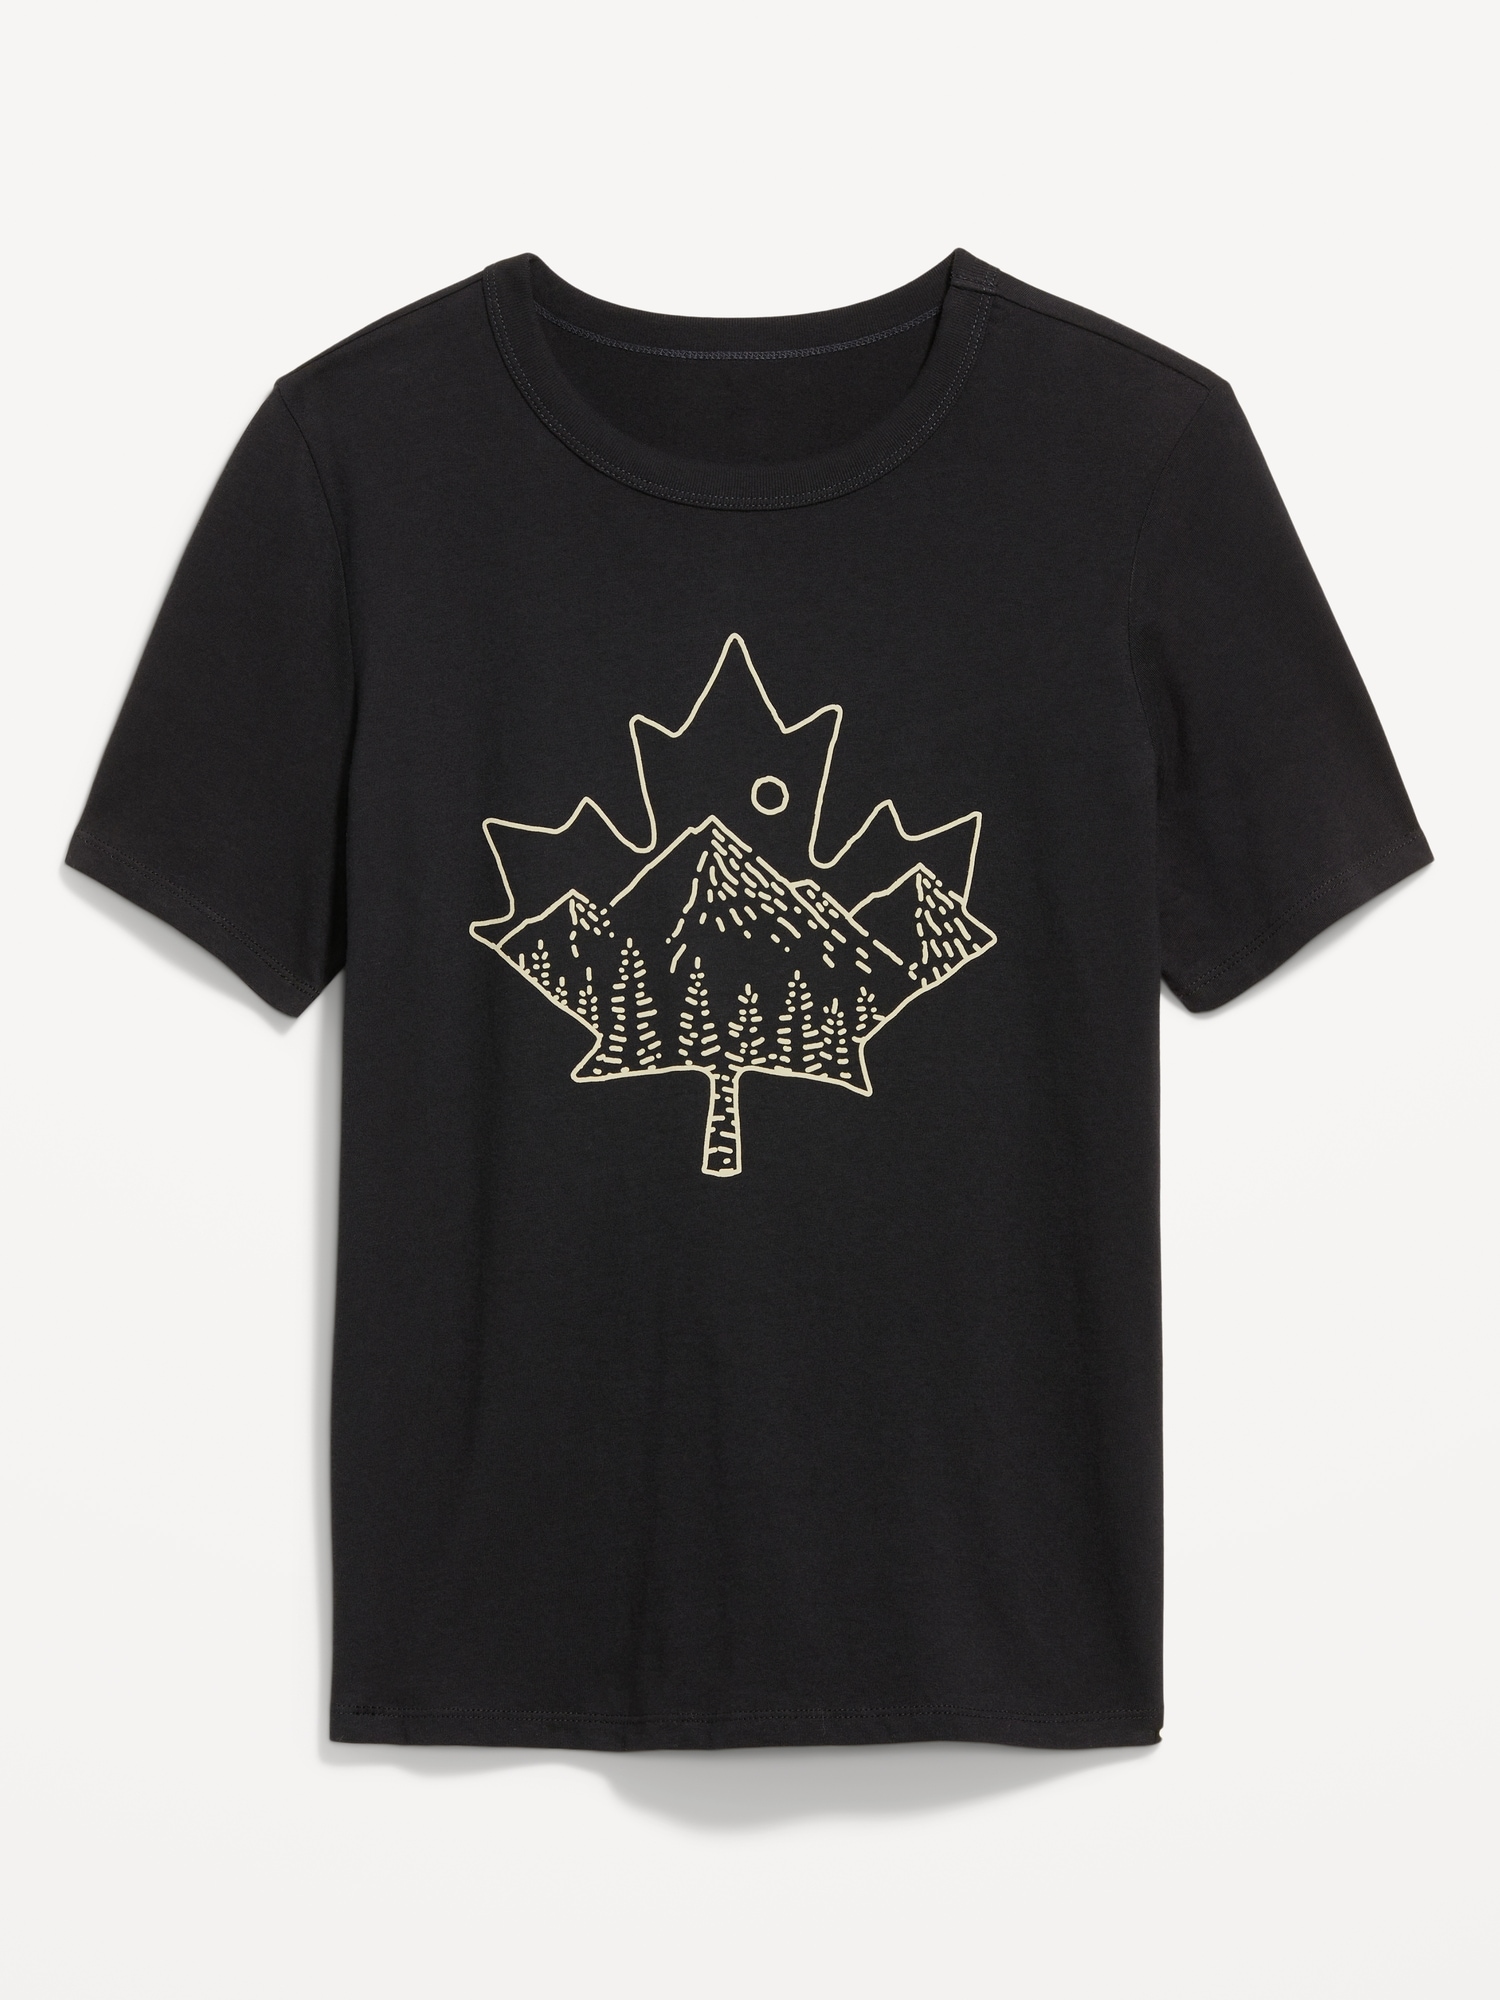 EveryWear Canada Graphic T-Shirt